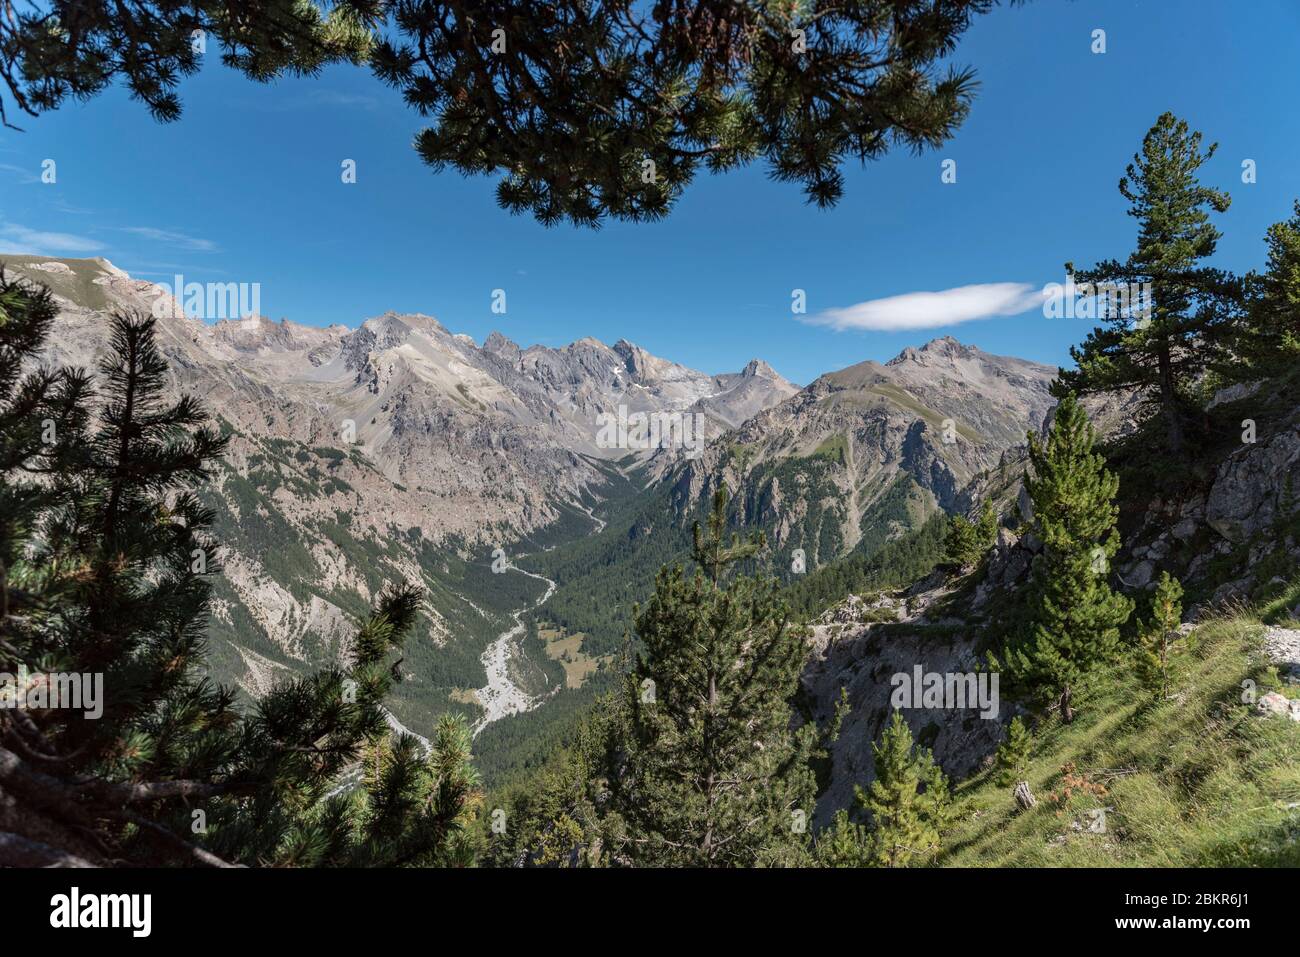 France, Hautes-Alpes (05), Queyras Regional Nature Park, Val d'Escreins Nature Reserve, Guillestre, Col de la Coulette, view of the Vallon Laugier from the Vars ridge between the Col de la Coulette (2362m) and the Col de la Scie (2362m) Stock Photo